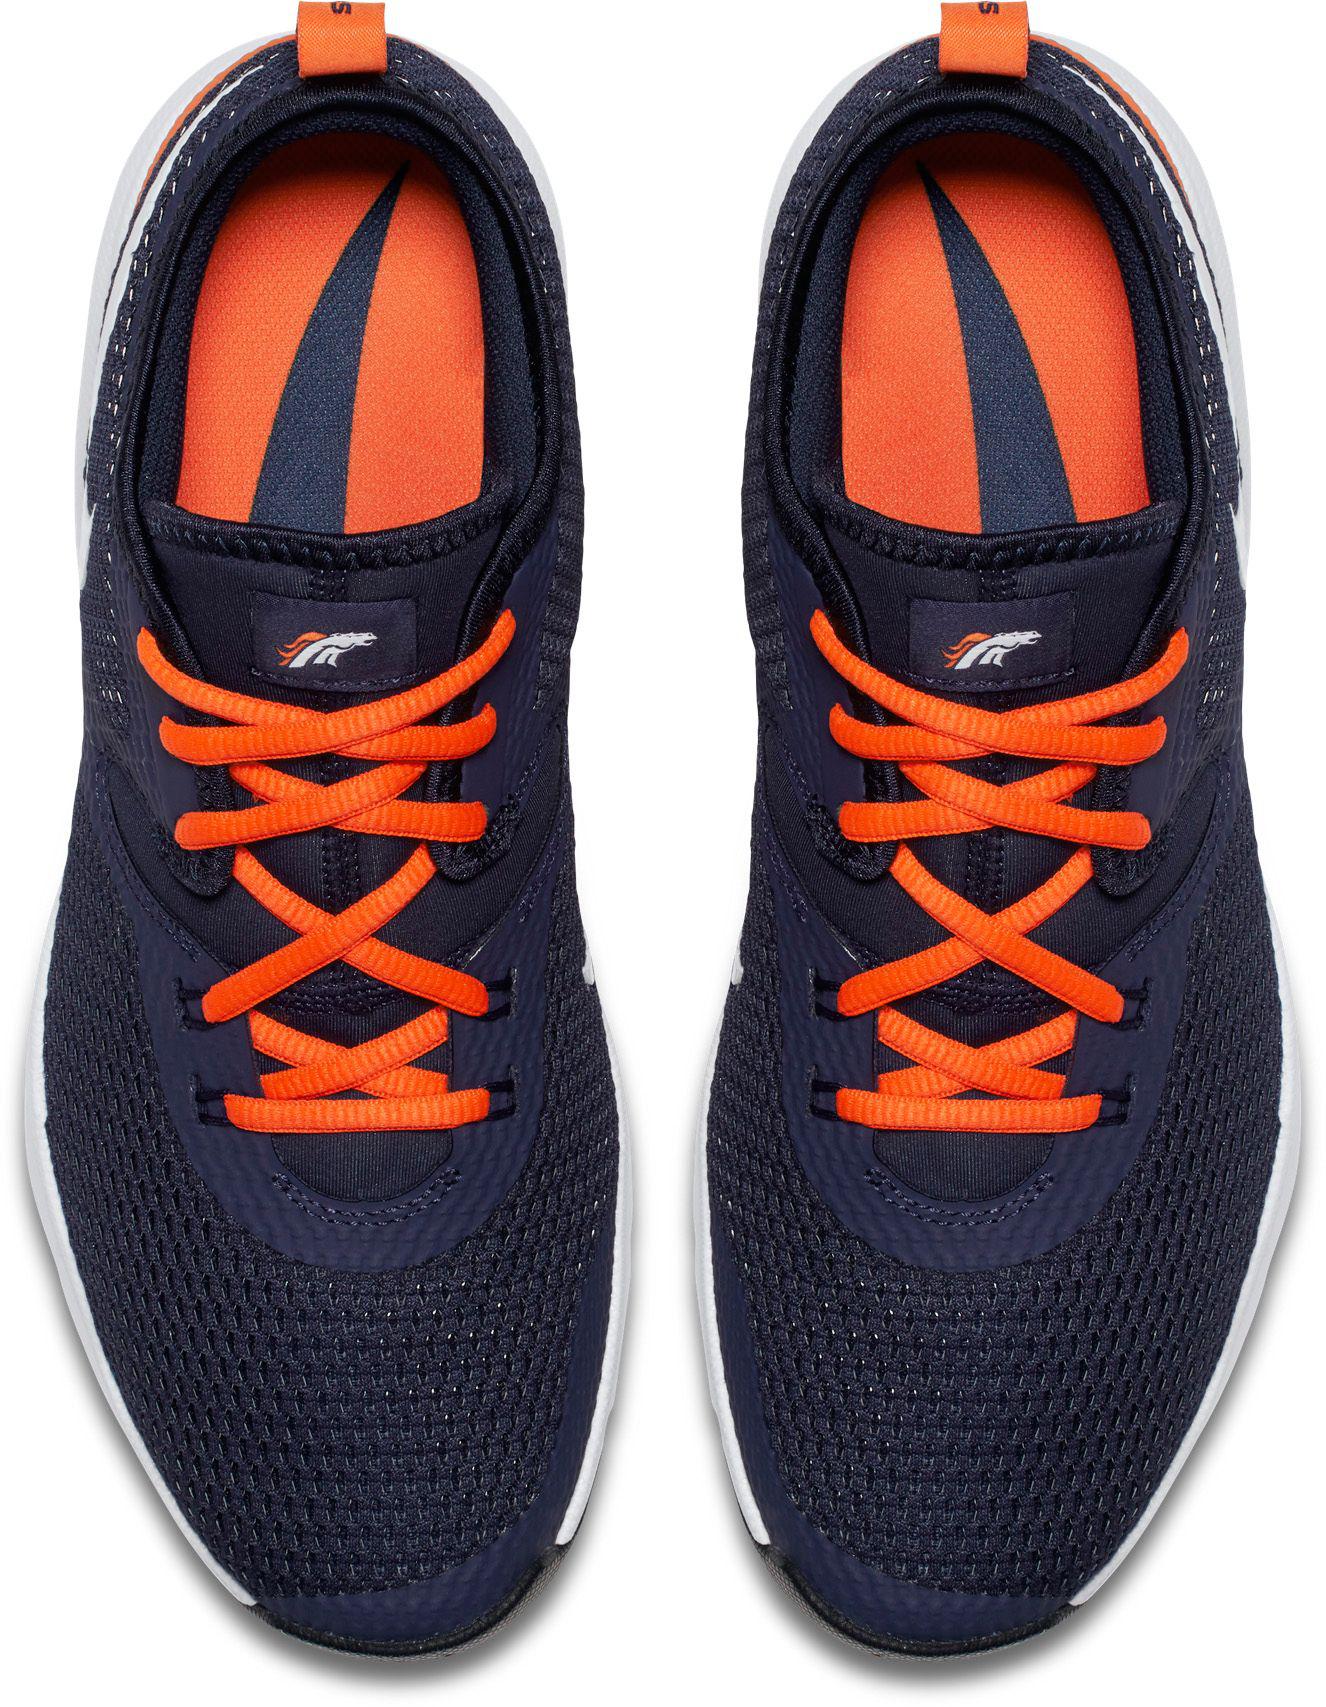 Nike Rubber Denver Broncos Nfl Air Max Typha 2 in Navy/Orange (Blue) for  Men - Lyst